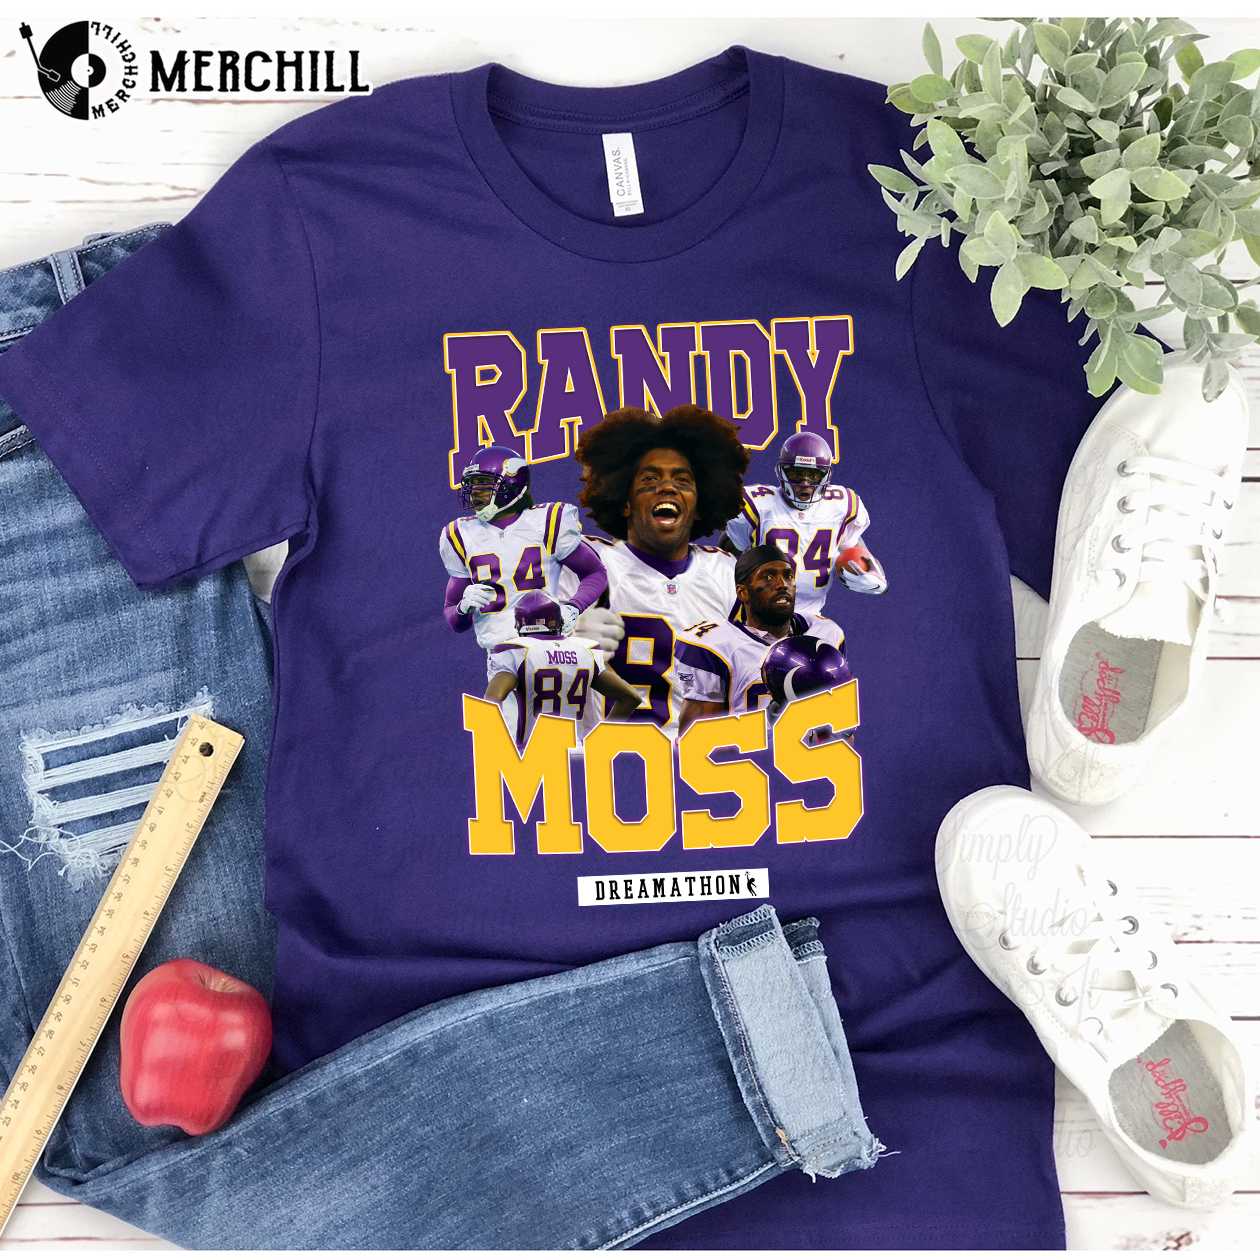 men's randy moss jersey